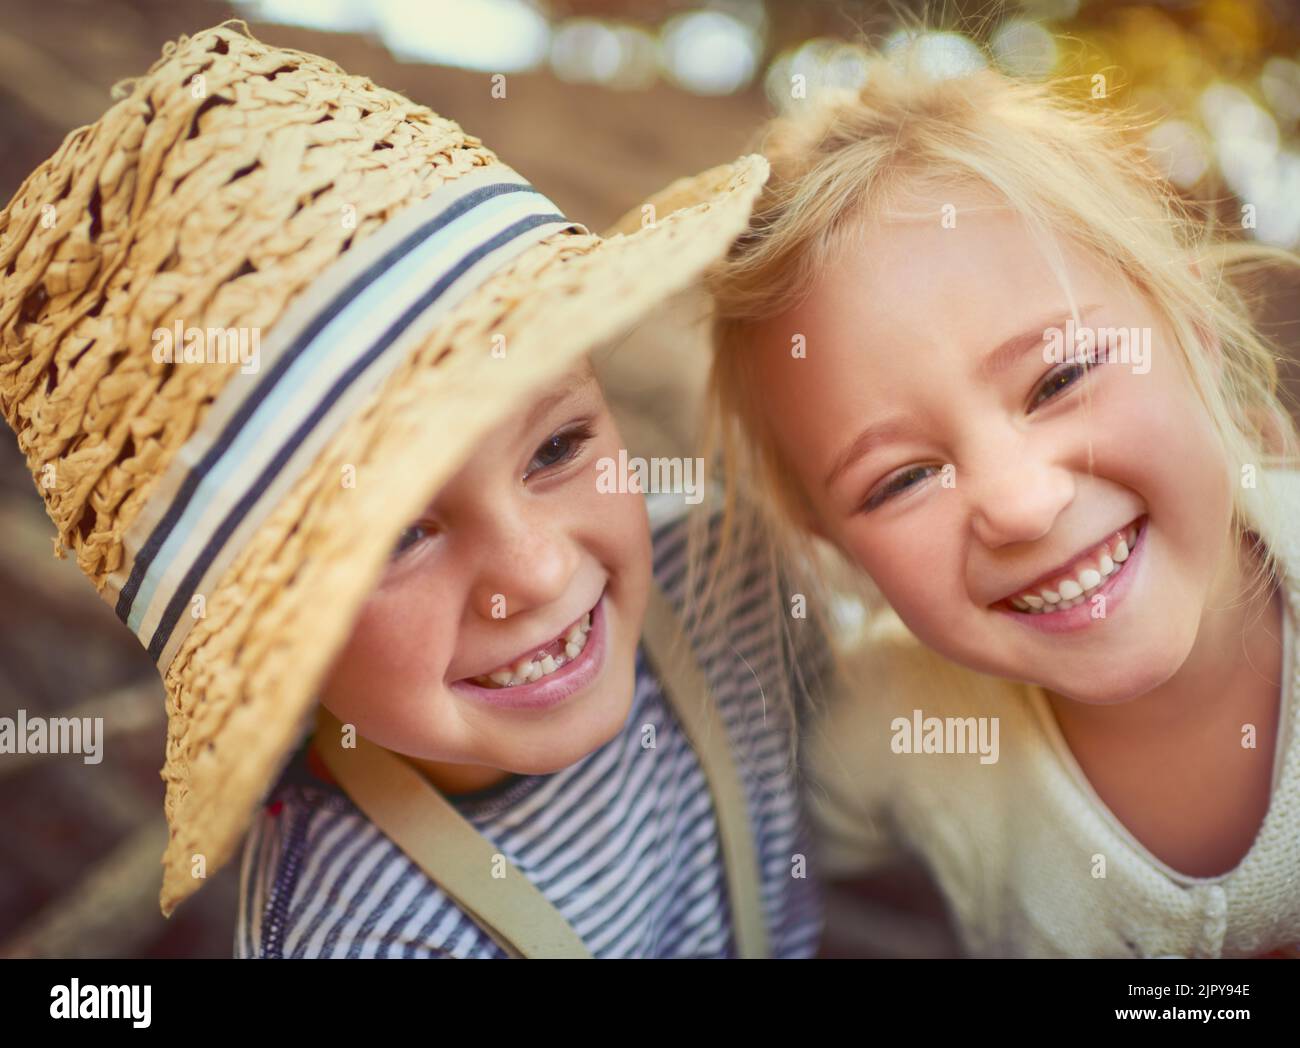 Süß und sorgenfrei wie möglich. Portrait von zwei kleinen Kindern, die im Freien spielen. Stockfoto